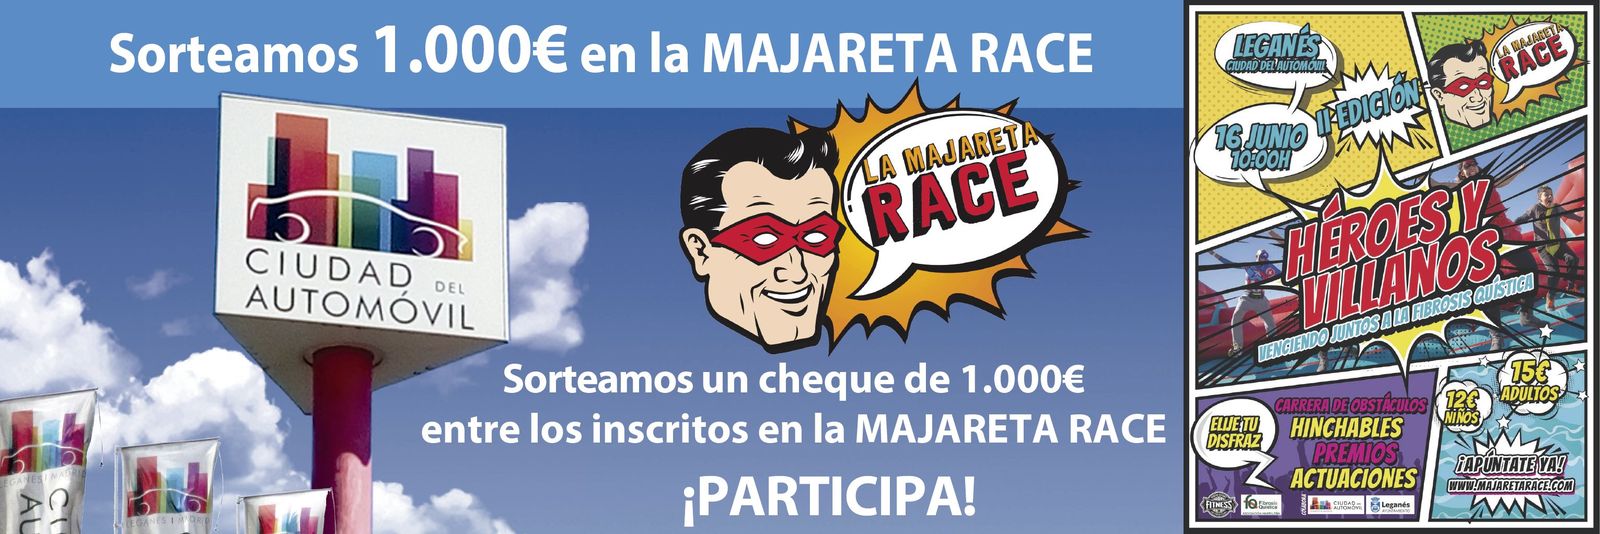 Ciudad del Automóvil sorteo de 1000 euros Cheque Majareta Race